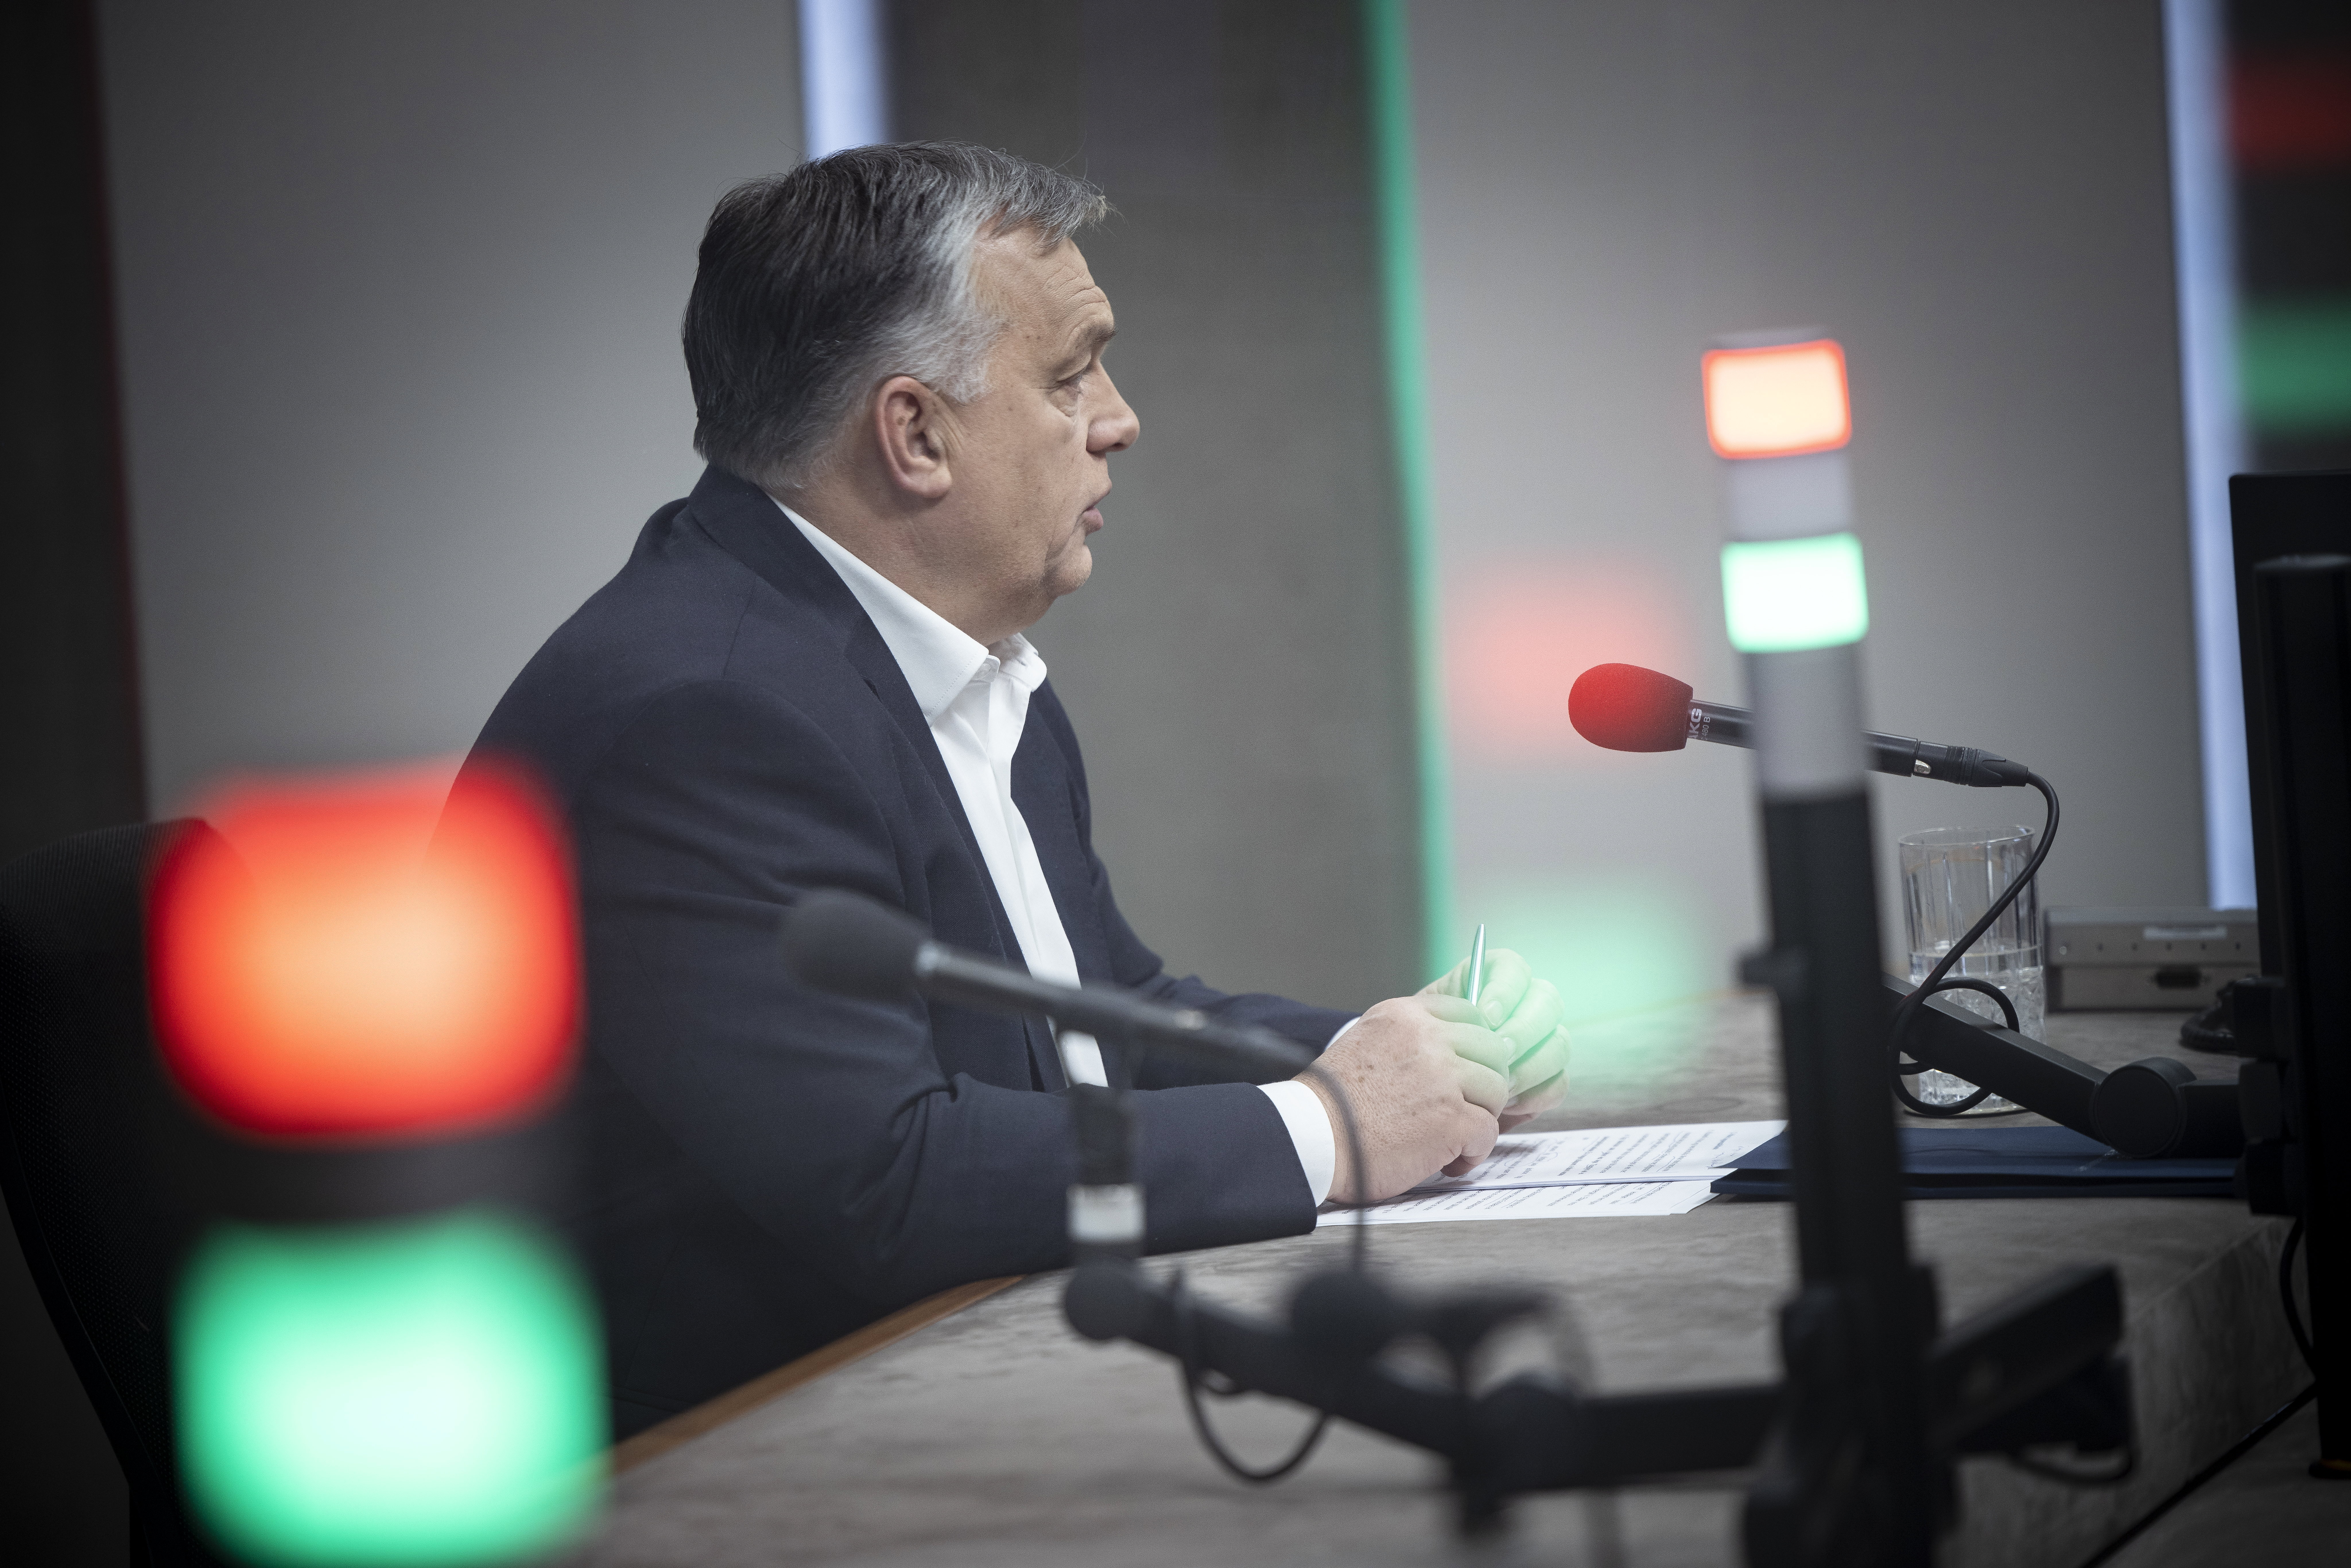 Megszólalt az újságíró is, aki Orbán EU-ból kilépős mondatait idézte